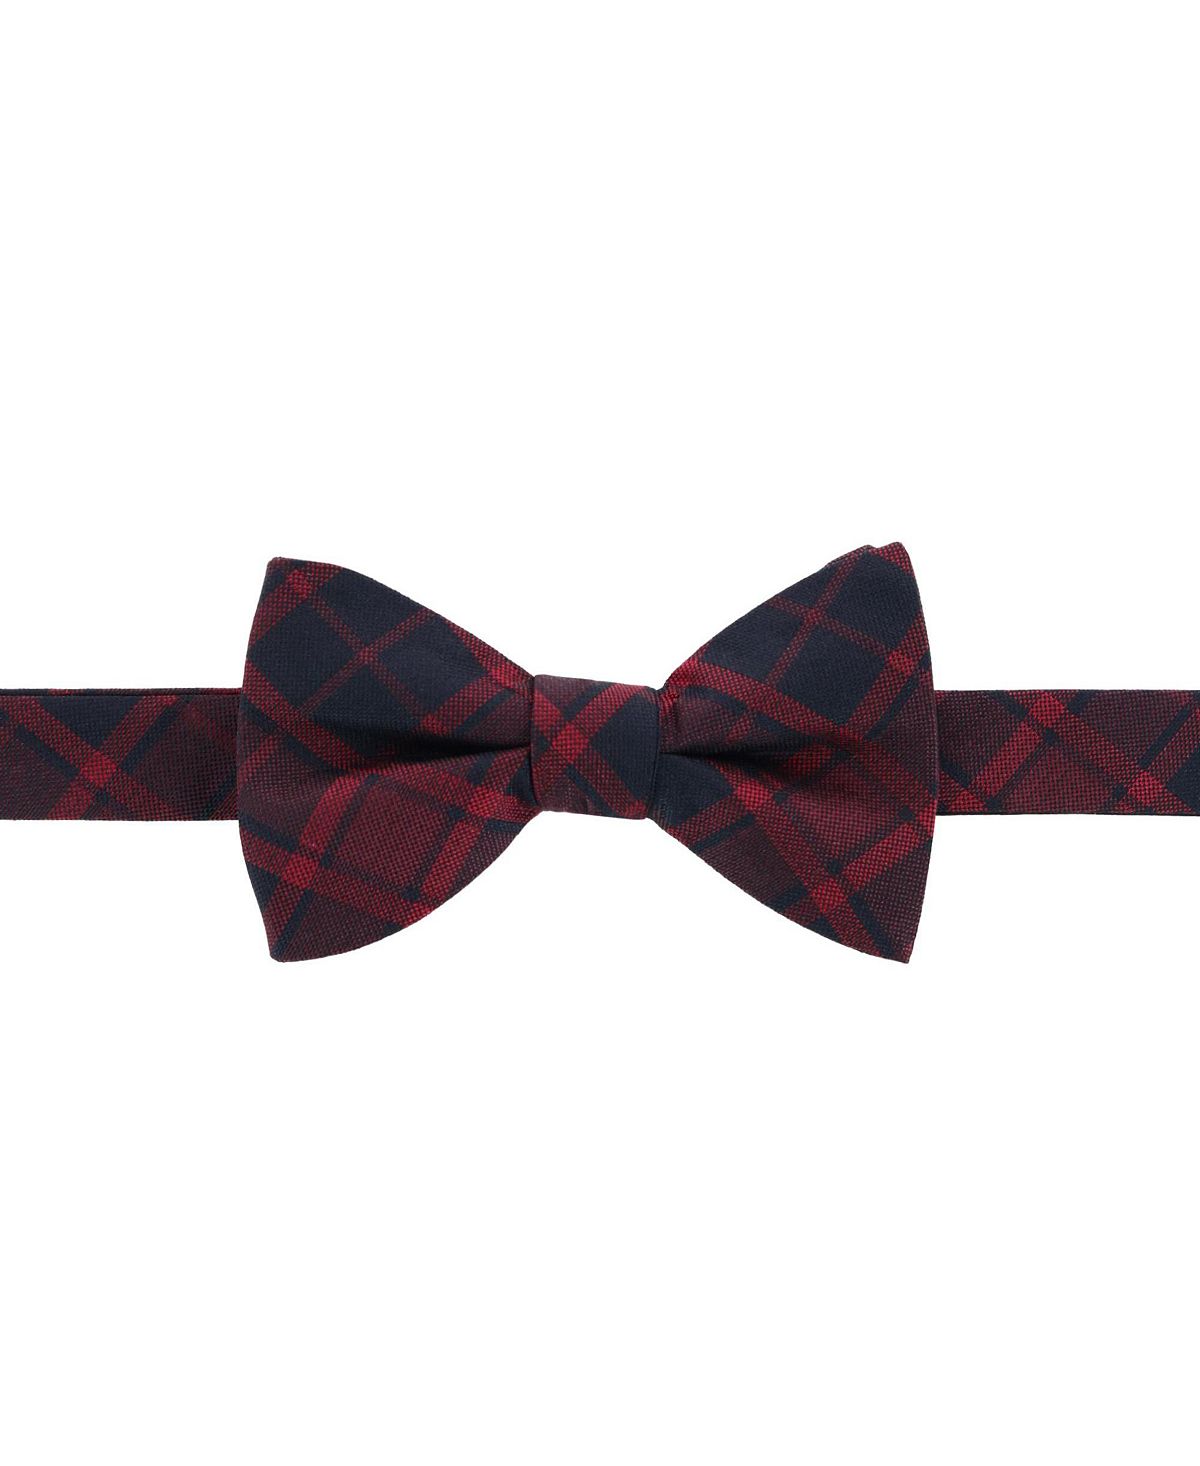 Красный шелковый галстук-бабочка в клетку Kincade Blackwatch TRAFALGAR серый галстук бабочка самовяз rene lezard 64768